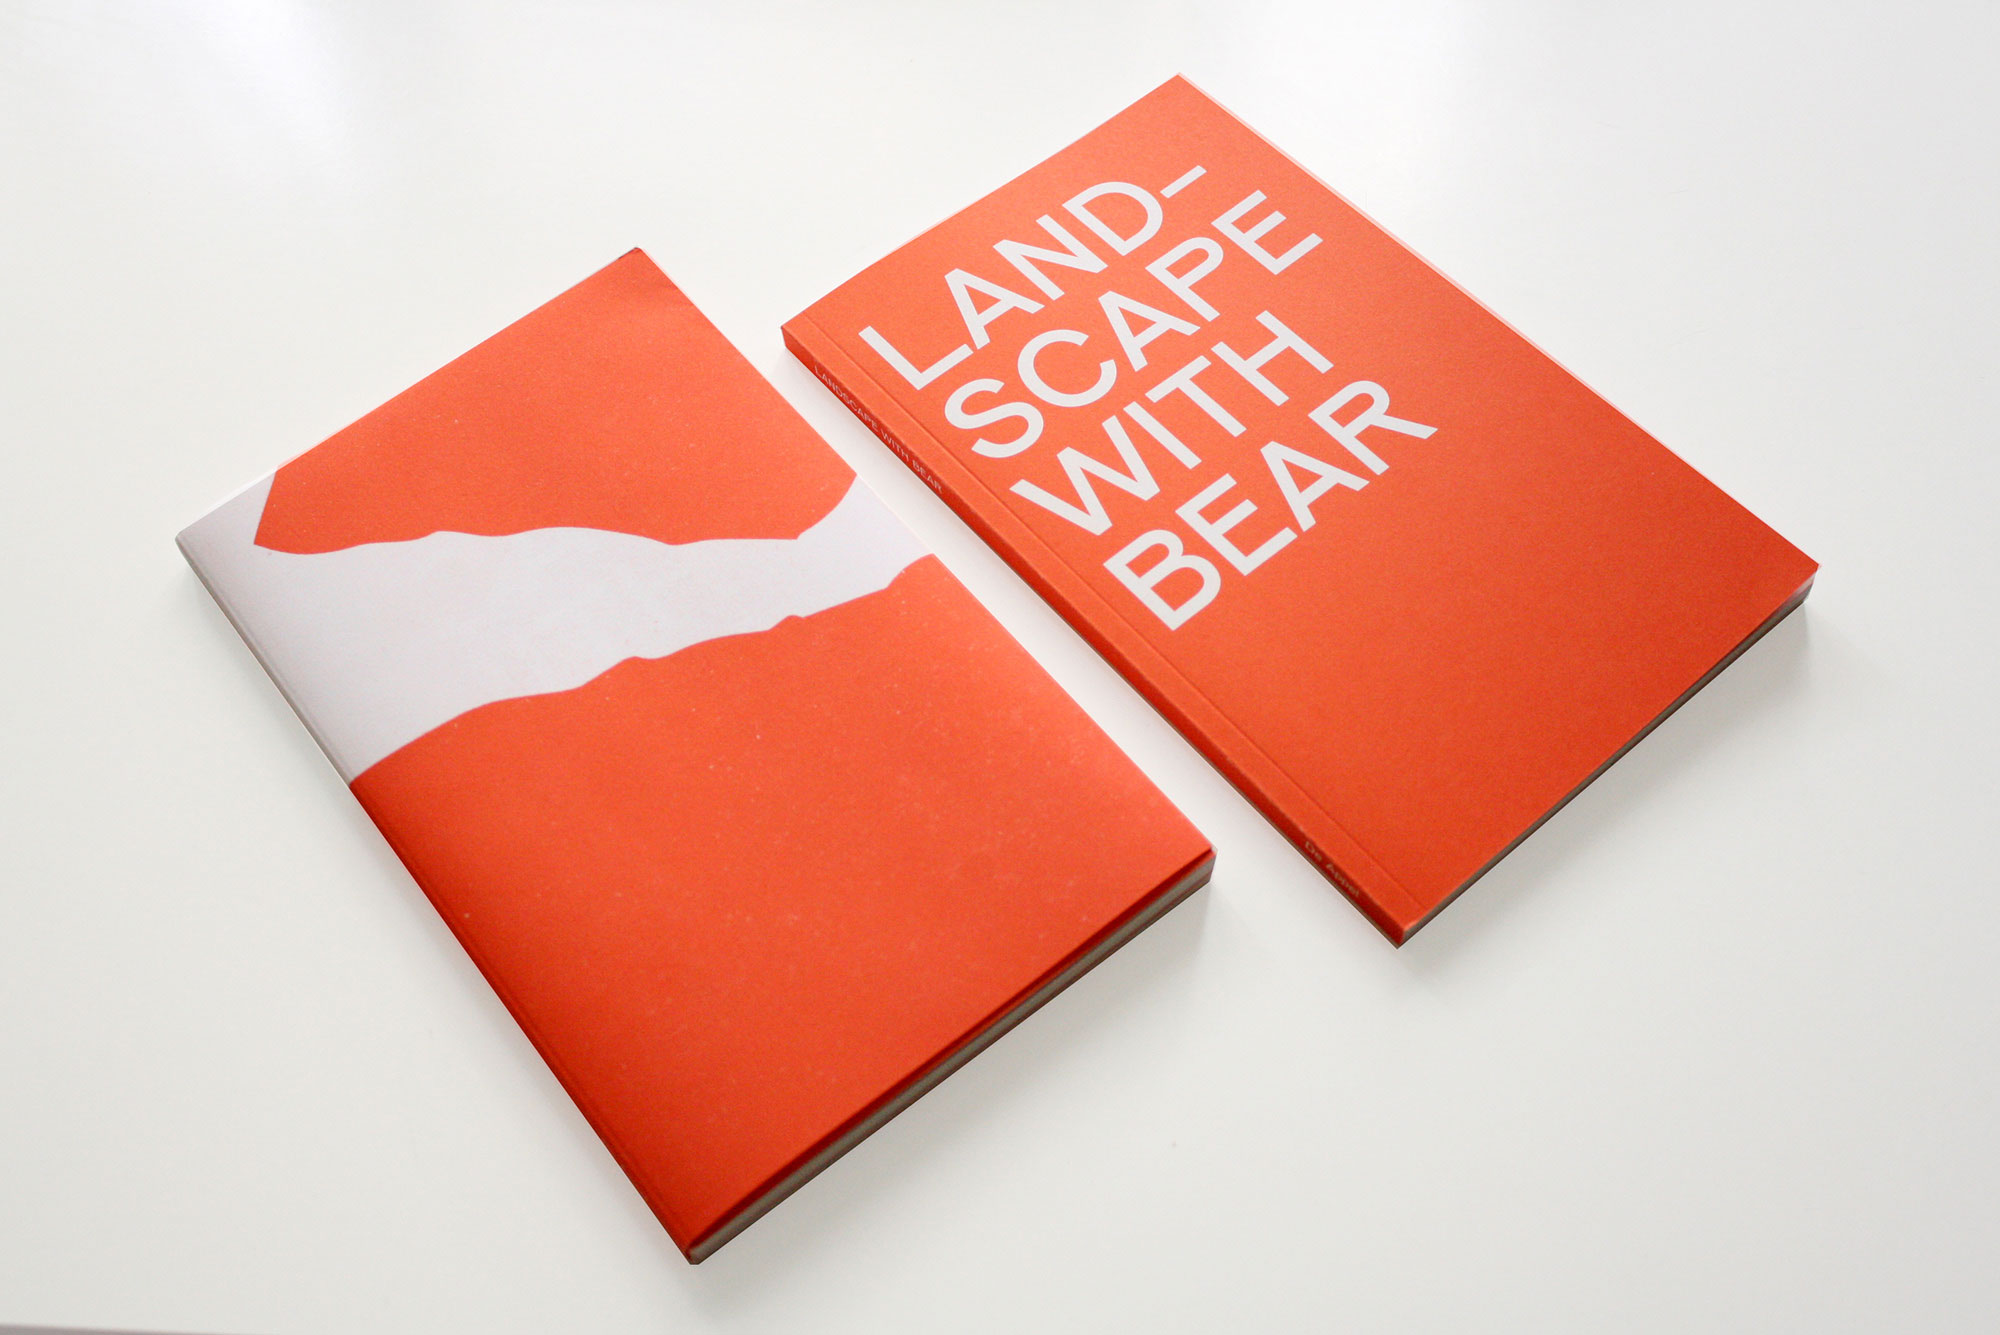 Book Landscape with Bear, published by De Appel, part of the De Appel Curatorial Programme 2018-19